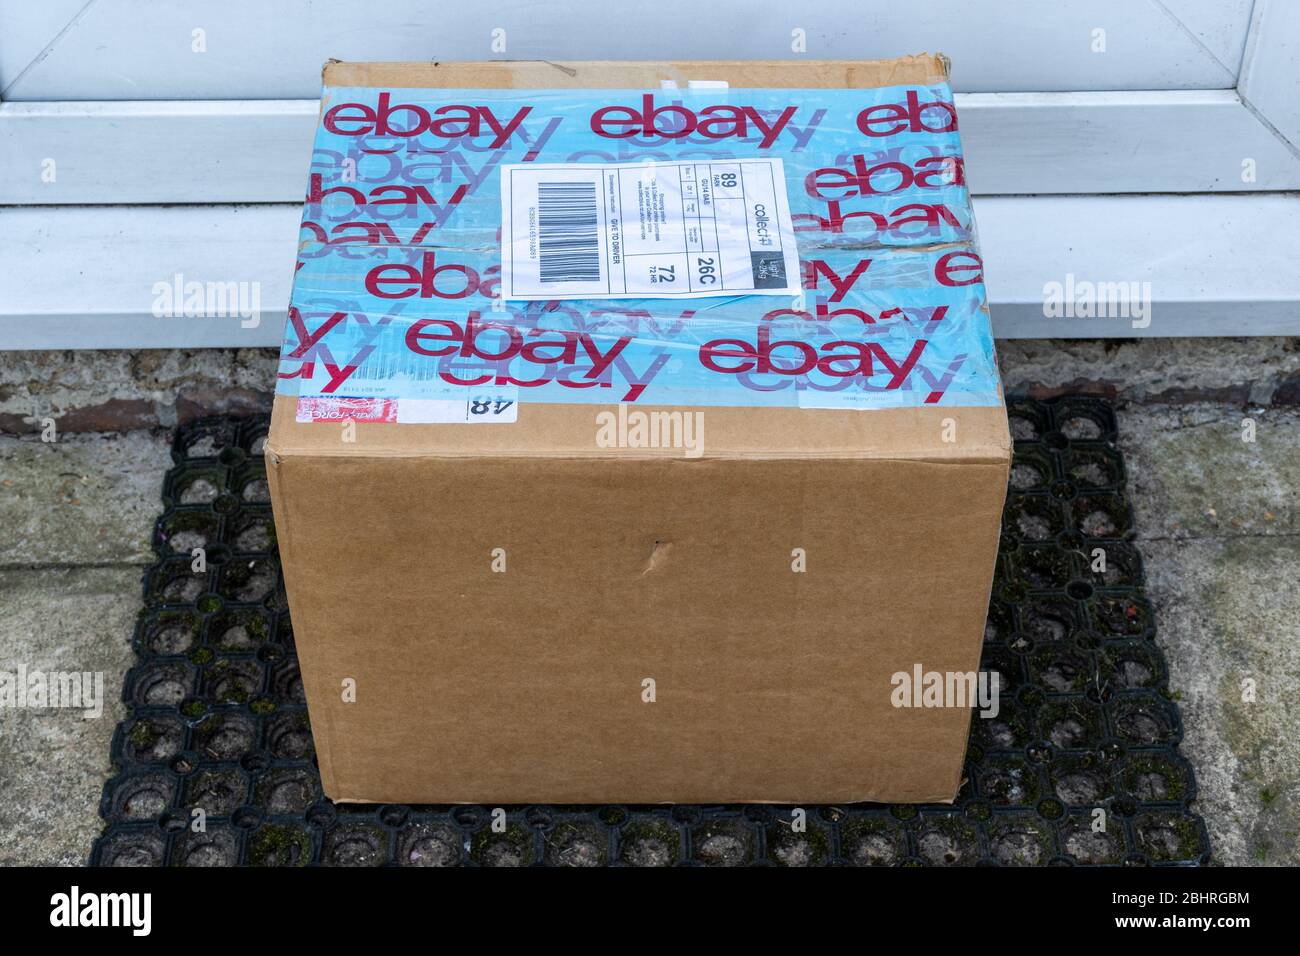 Colis eBay, boîte en carton, paquet, livraison, laissé à la porte, Royaume-Uni Banque D'Images